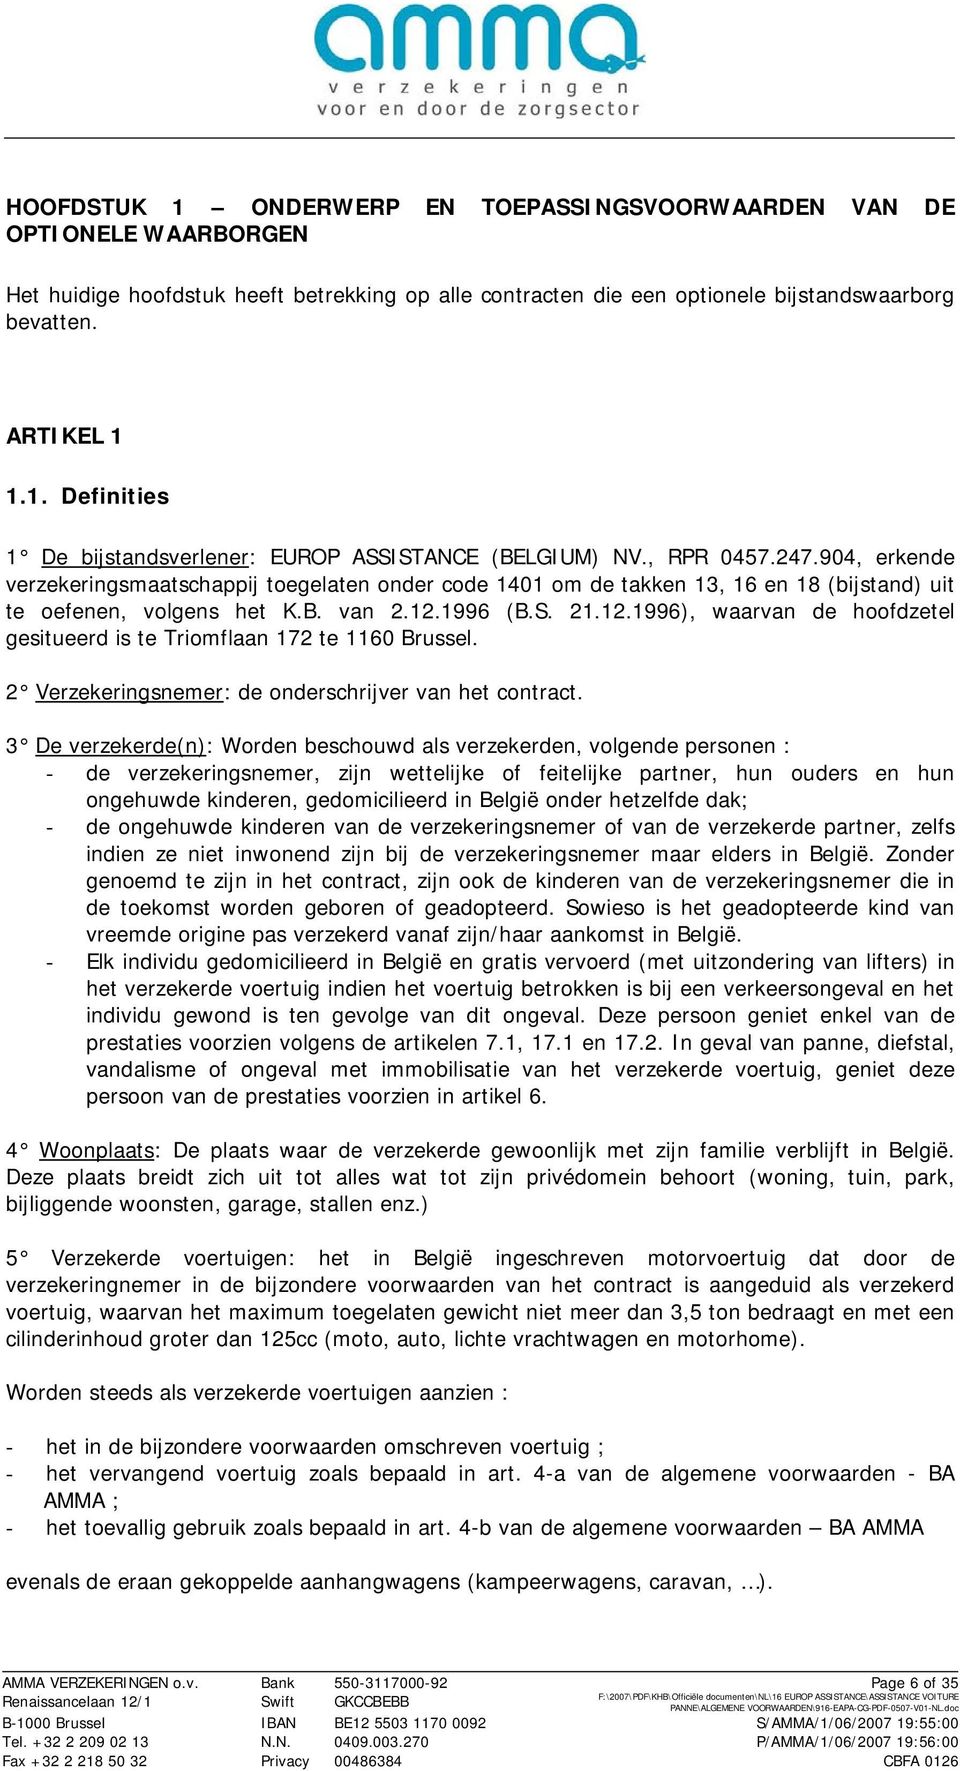 1996 (B.S. 21.12.1996), waarvan de hoofdzetel gesitueerd is te Triomflaan 172 te 1160 Brussel. 2 Verzekeringsnemer: de onderschrijver van het contract.